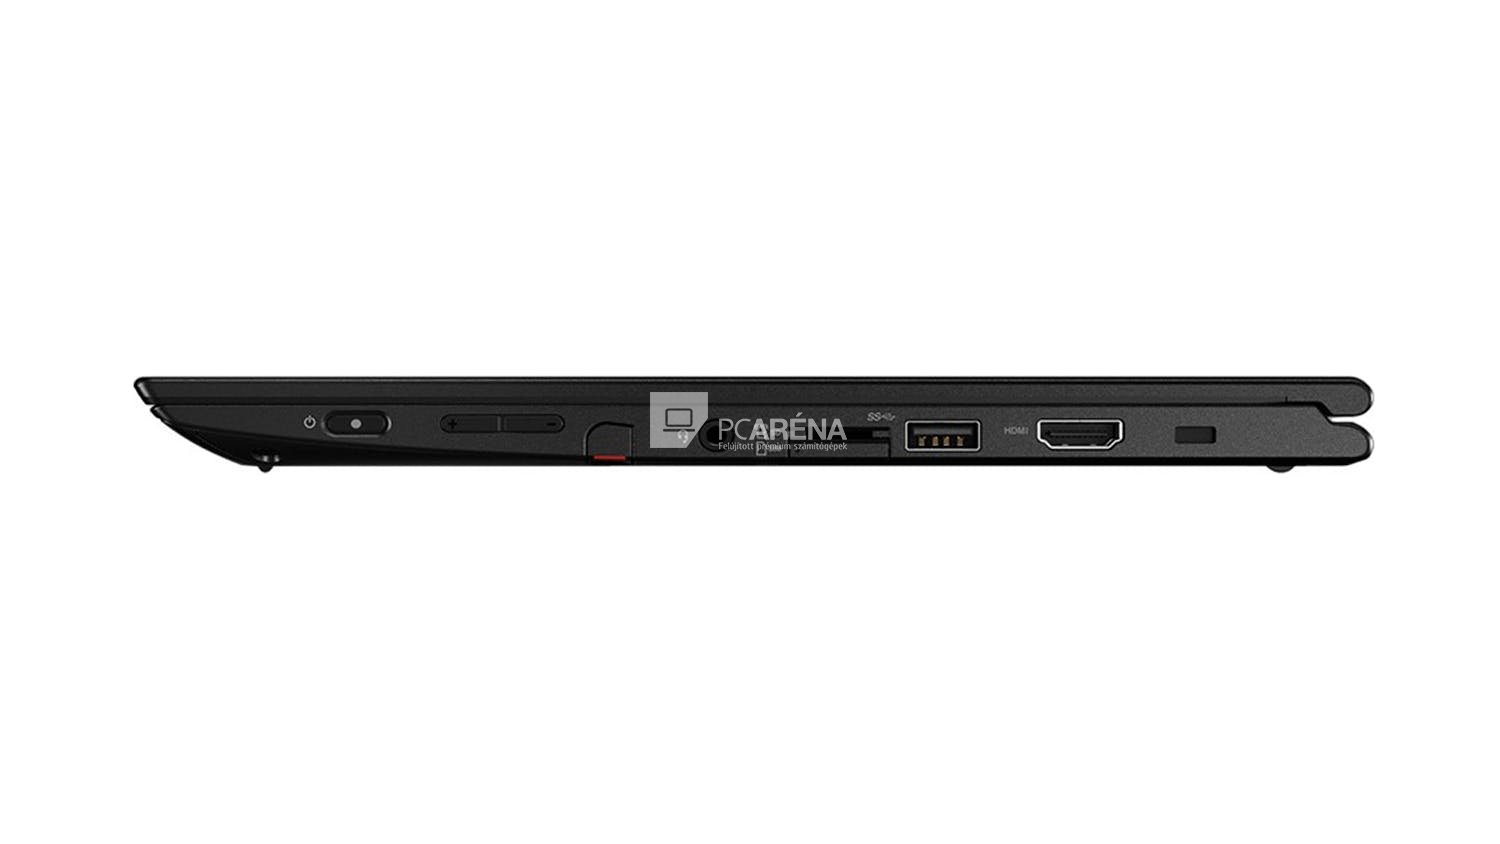 Lenovo ThinkPad Yoga 260 érintőkijelzős laptop